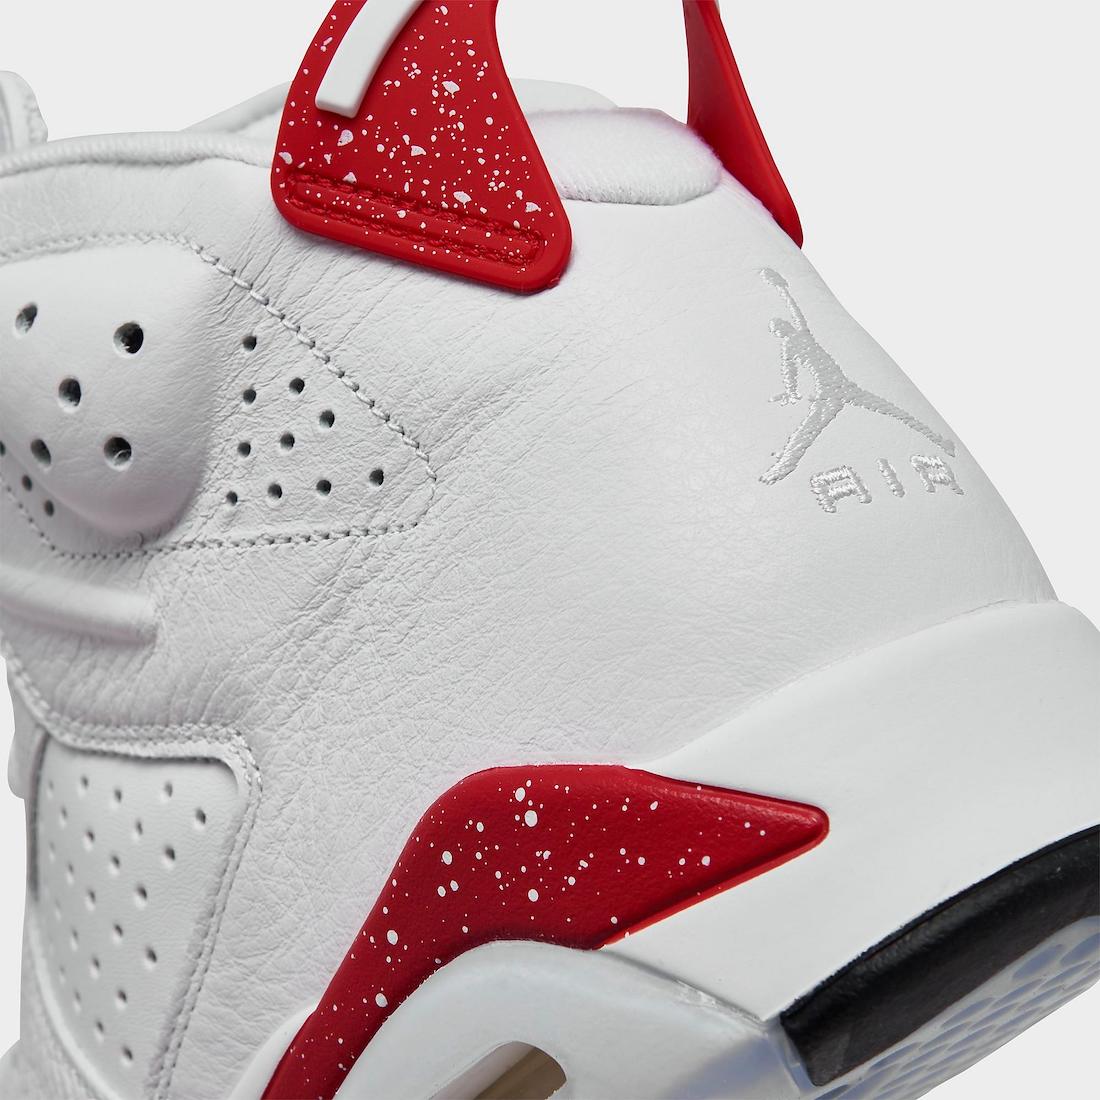 Air off white jordan 6 Jordan 6 Red Oreo CT8529-162 Release Date - Sneaker Bar Detroit